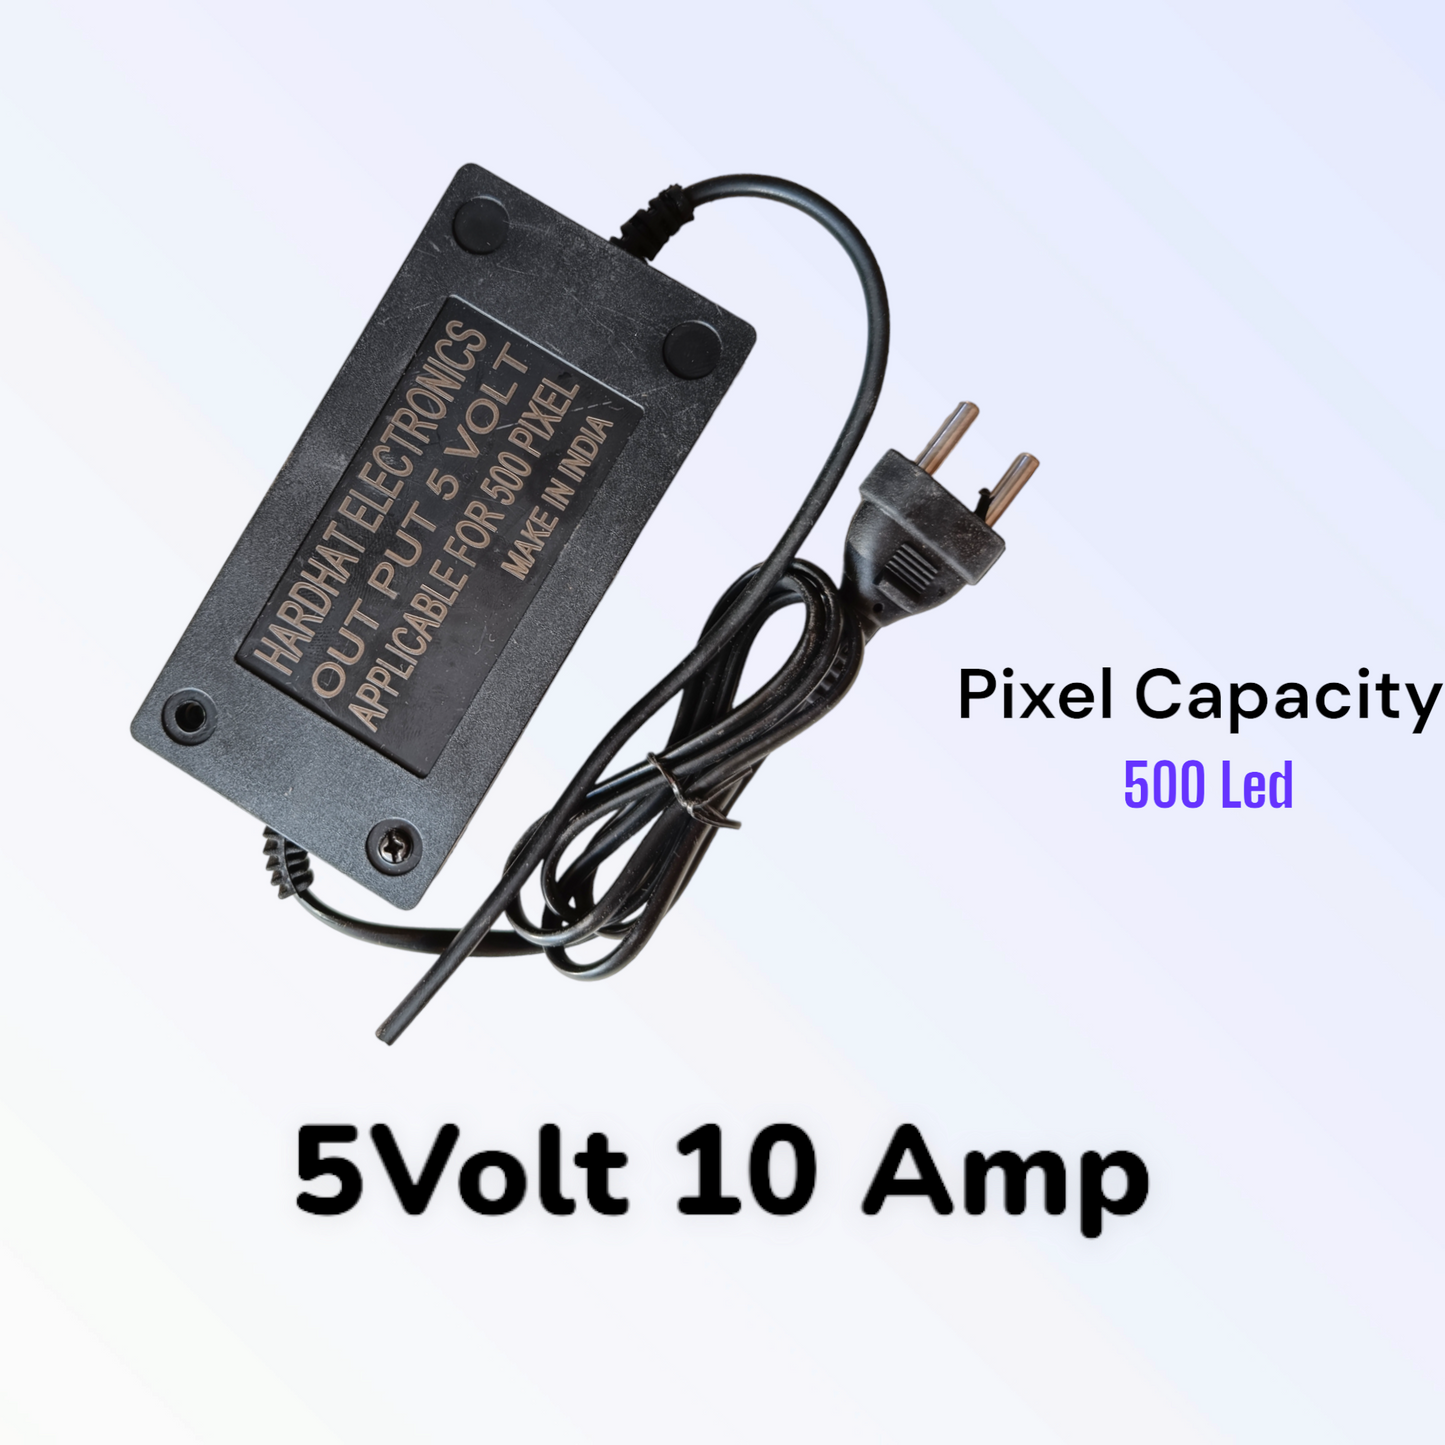 Pixel Adapter 5volt 10amp